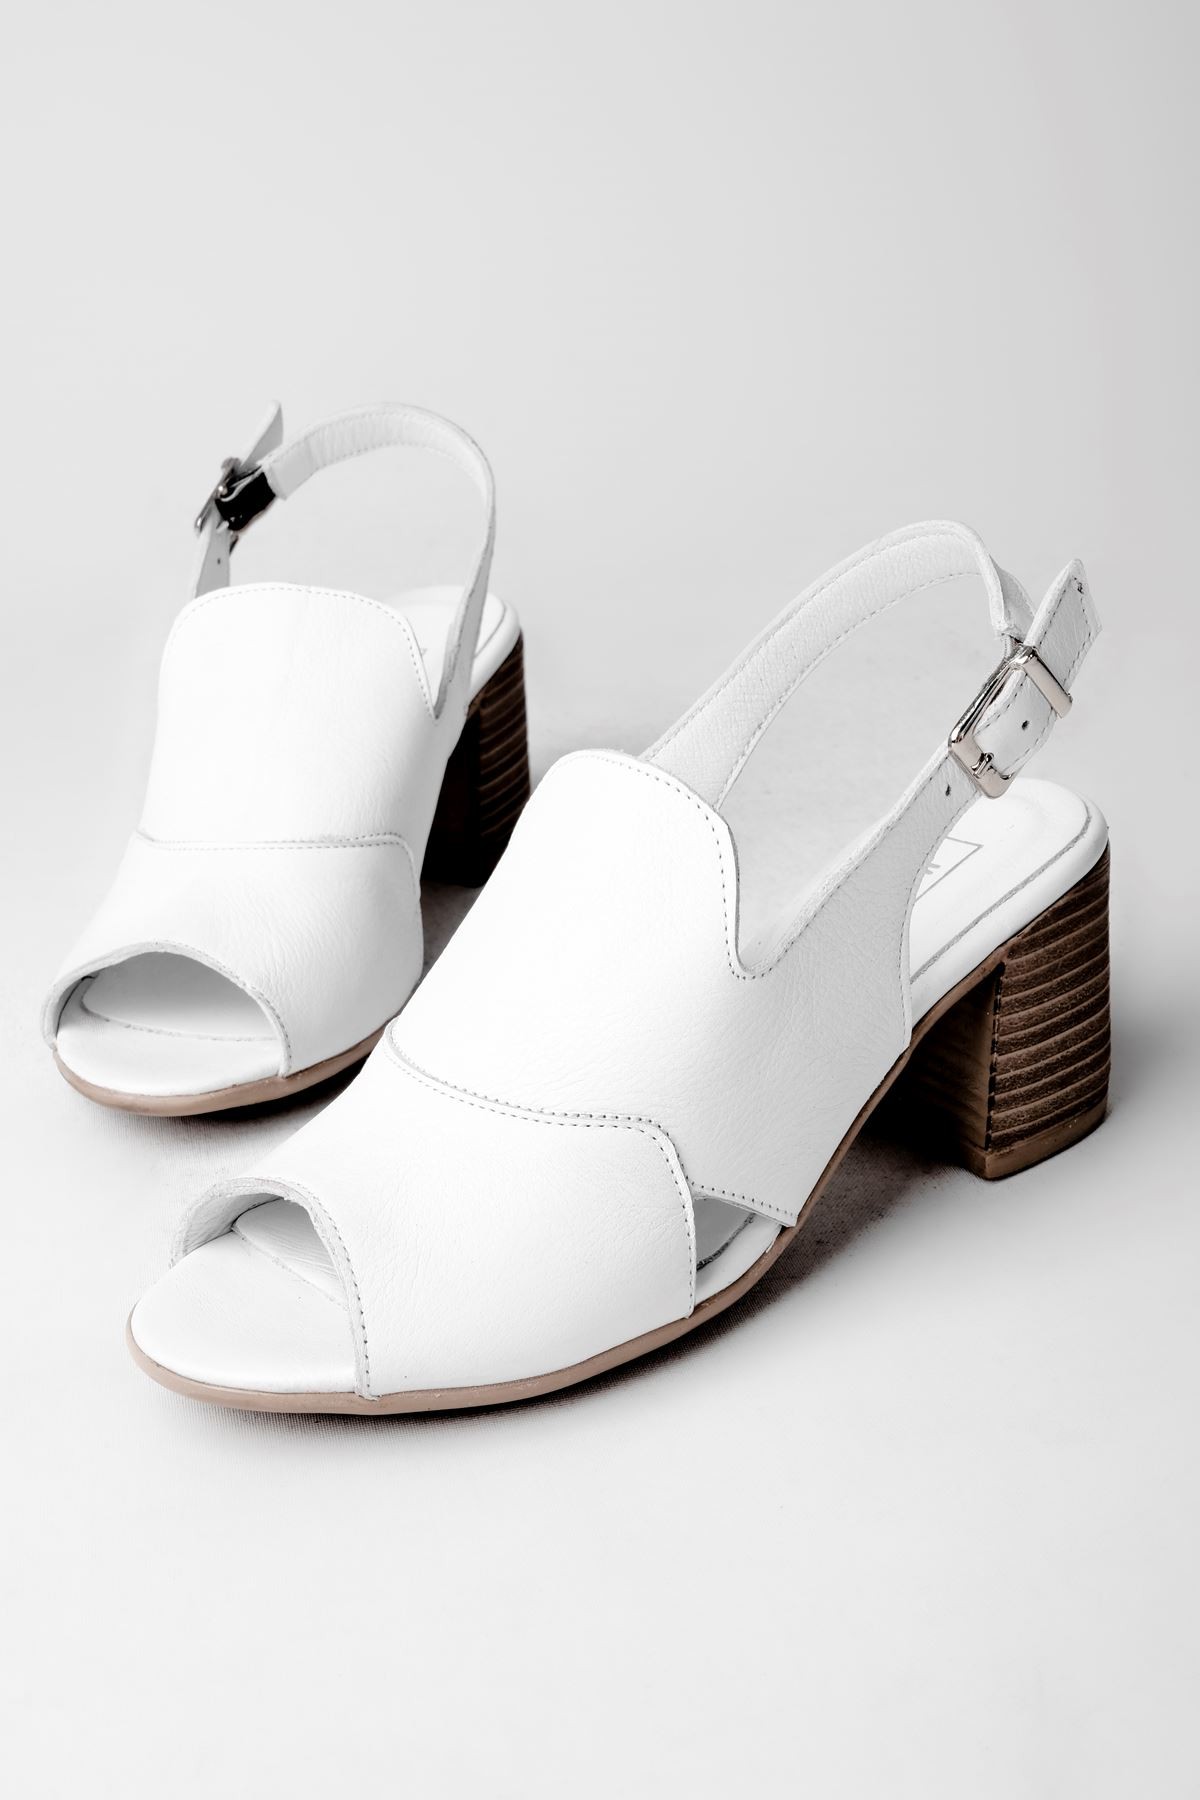 Andry Kadın Hakiki Deri Arkası Açık Topuklu Sandalet-B3129 - Beyaz